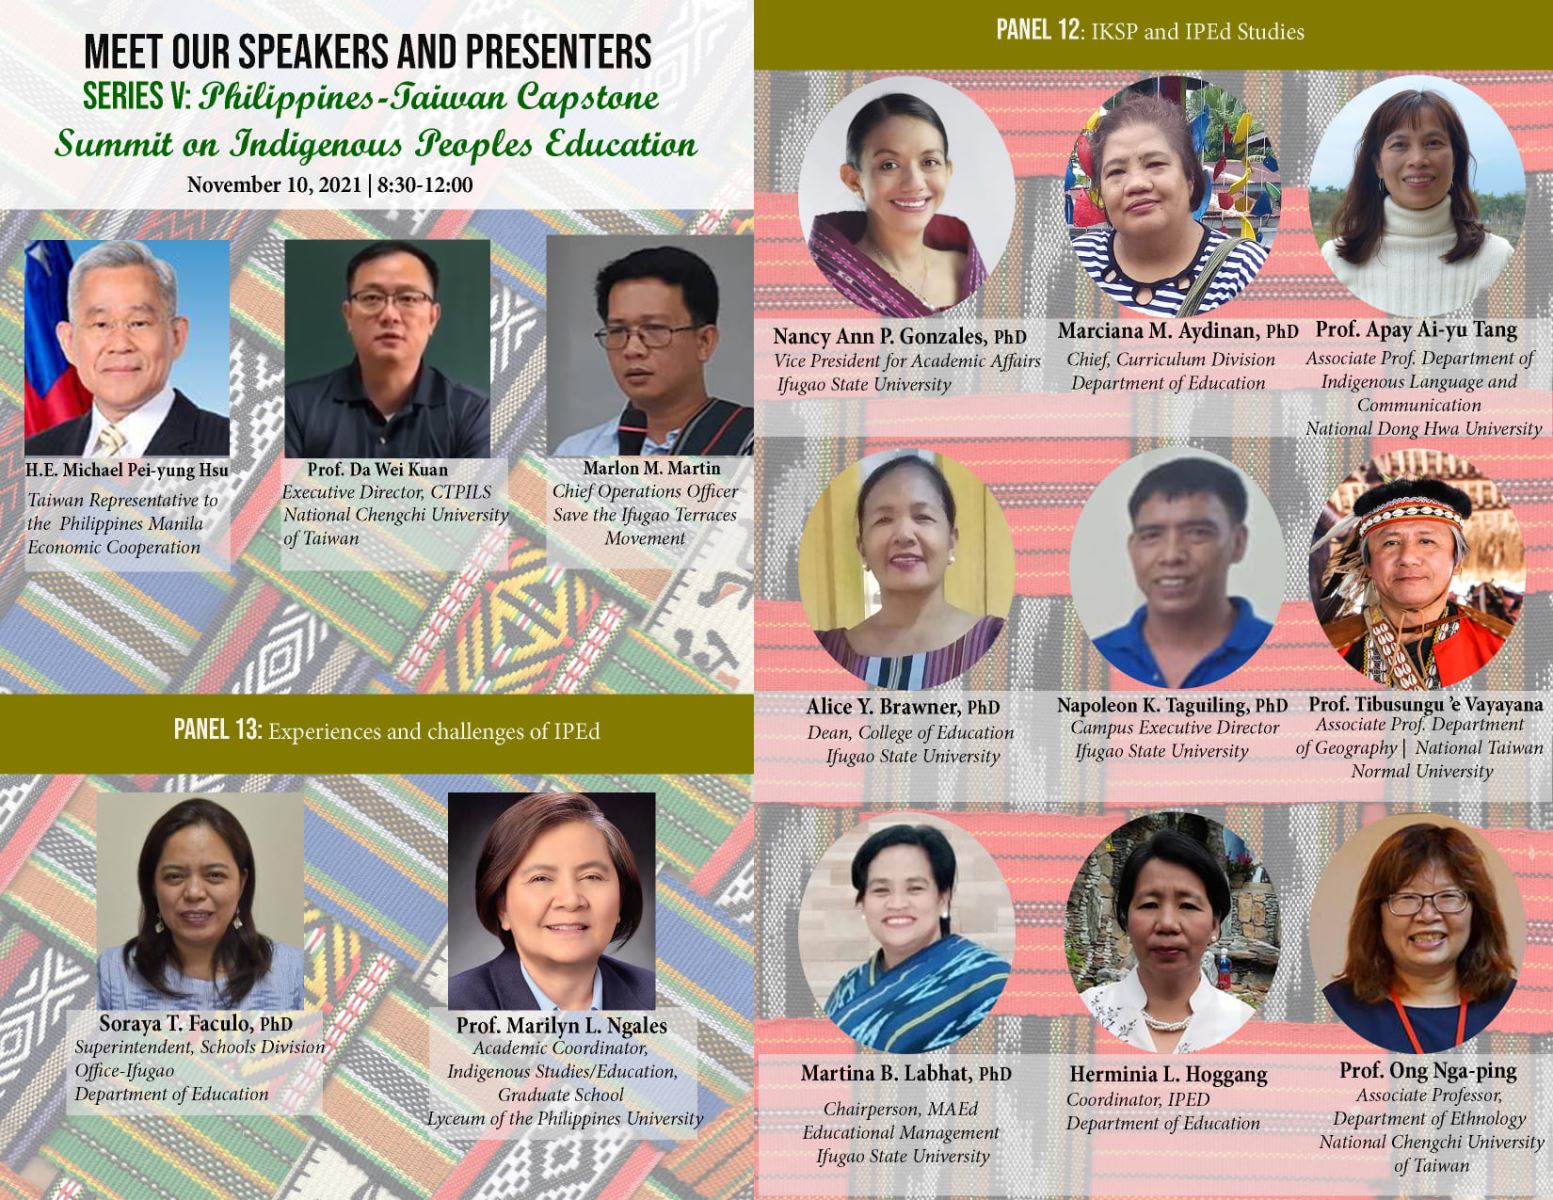 邀請菲律賓、臺灣雙邊原住民教育學者以及政府官員針對原住民教育議題進行專題發表和交流對話。